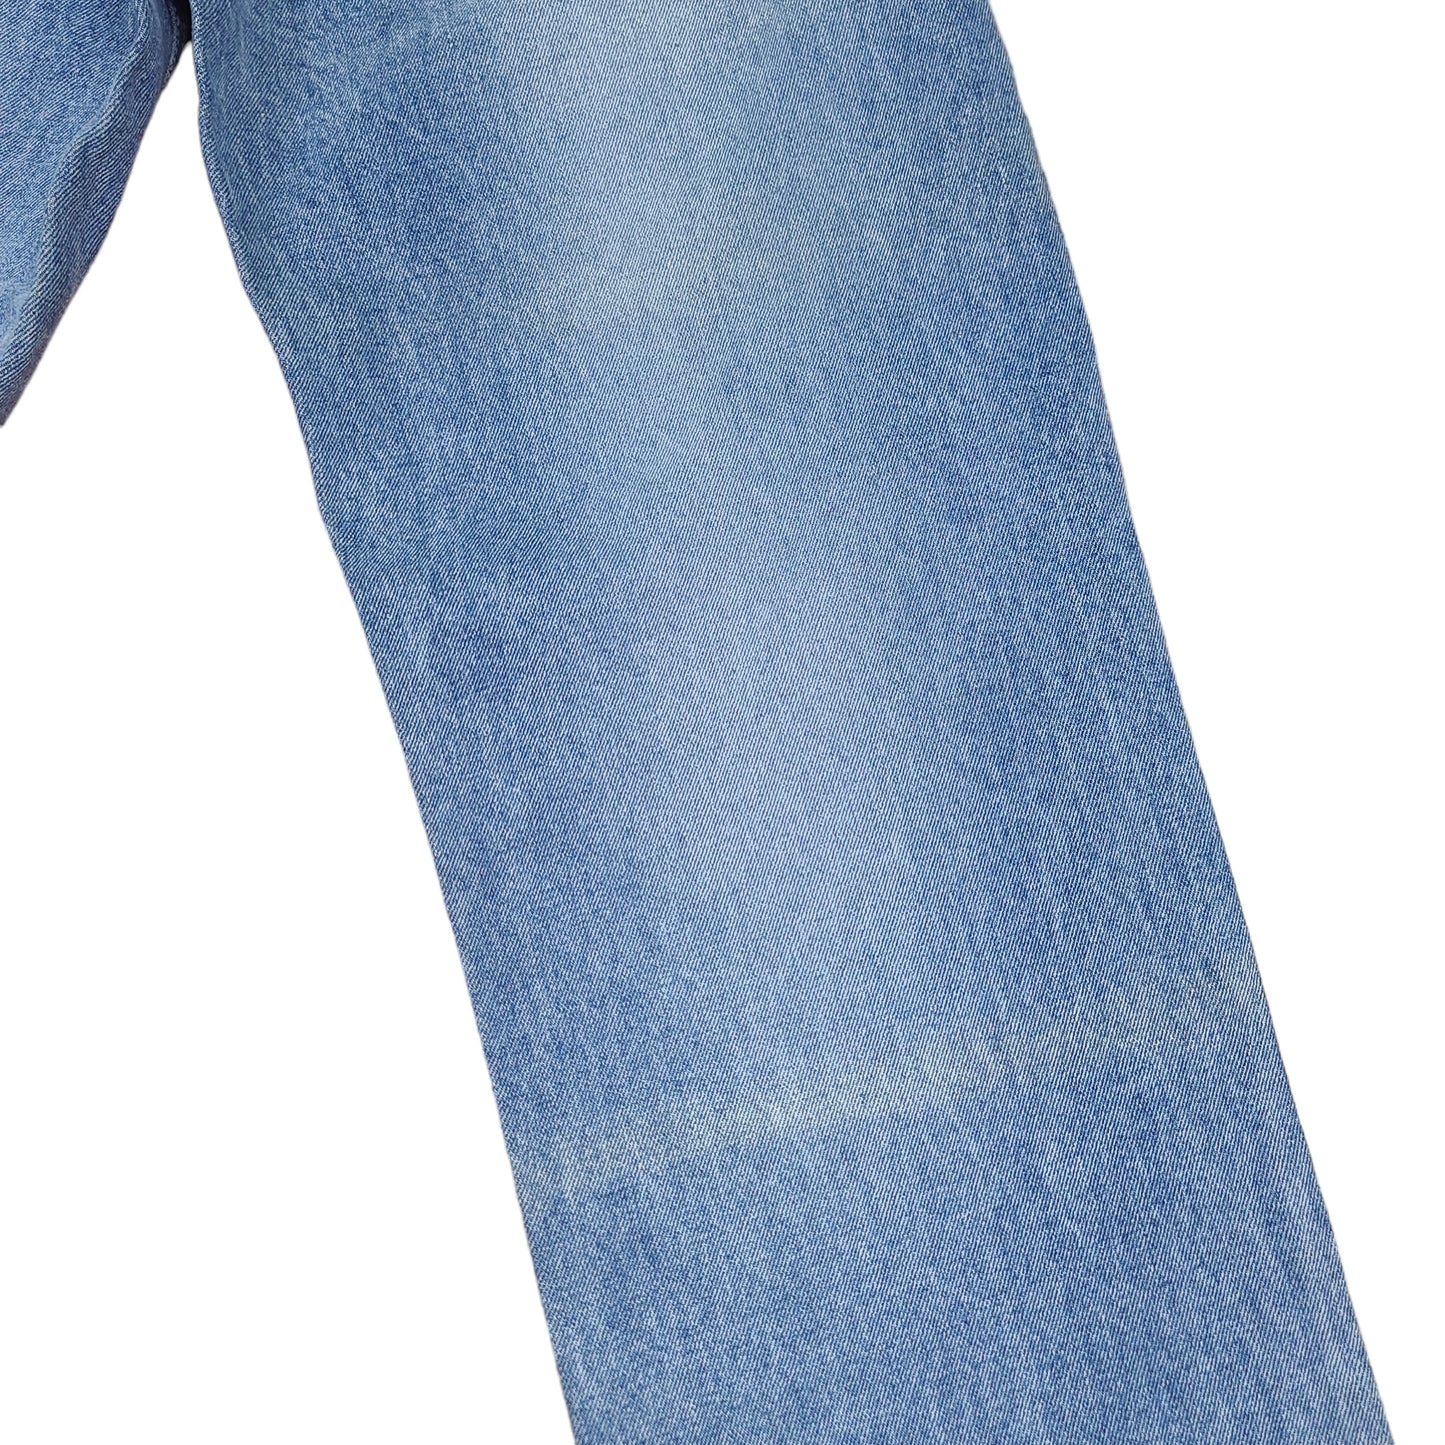 Vintage Y2K Light Blue Paco Jeans Embroidered Arch Pocket Denim Pants